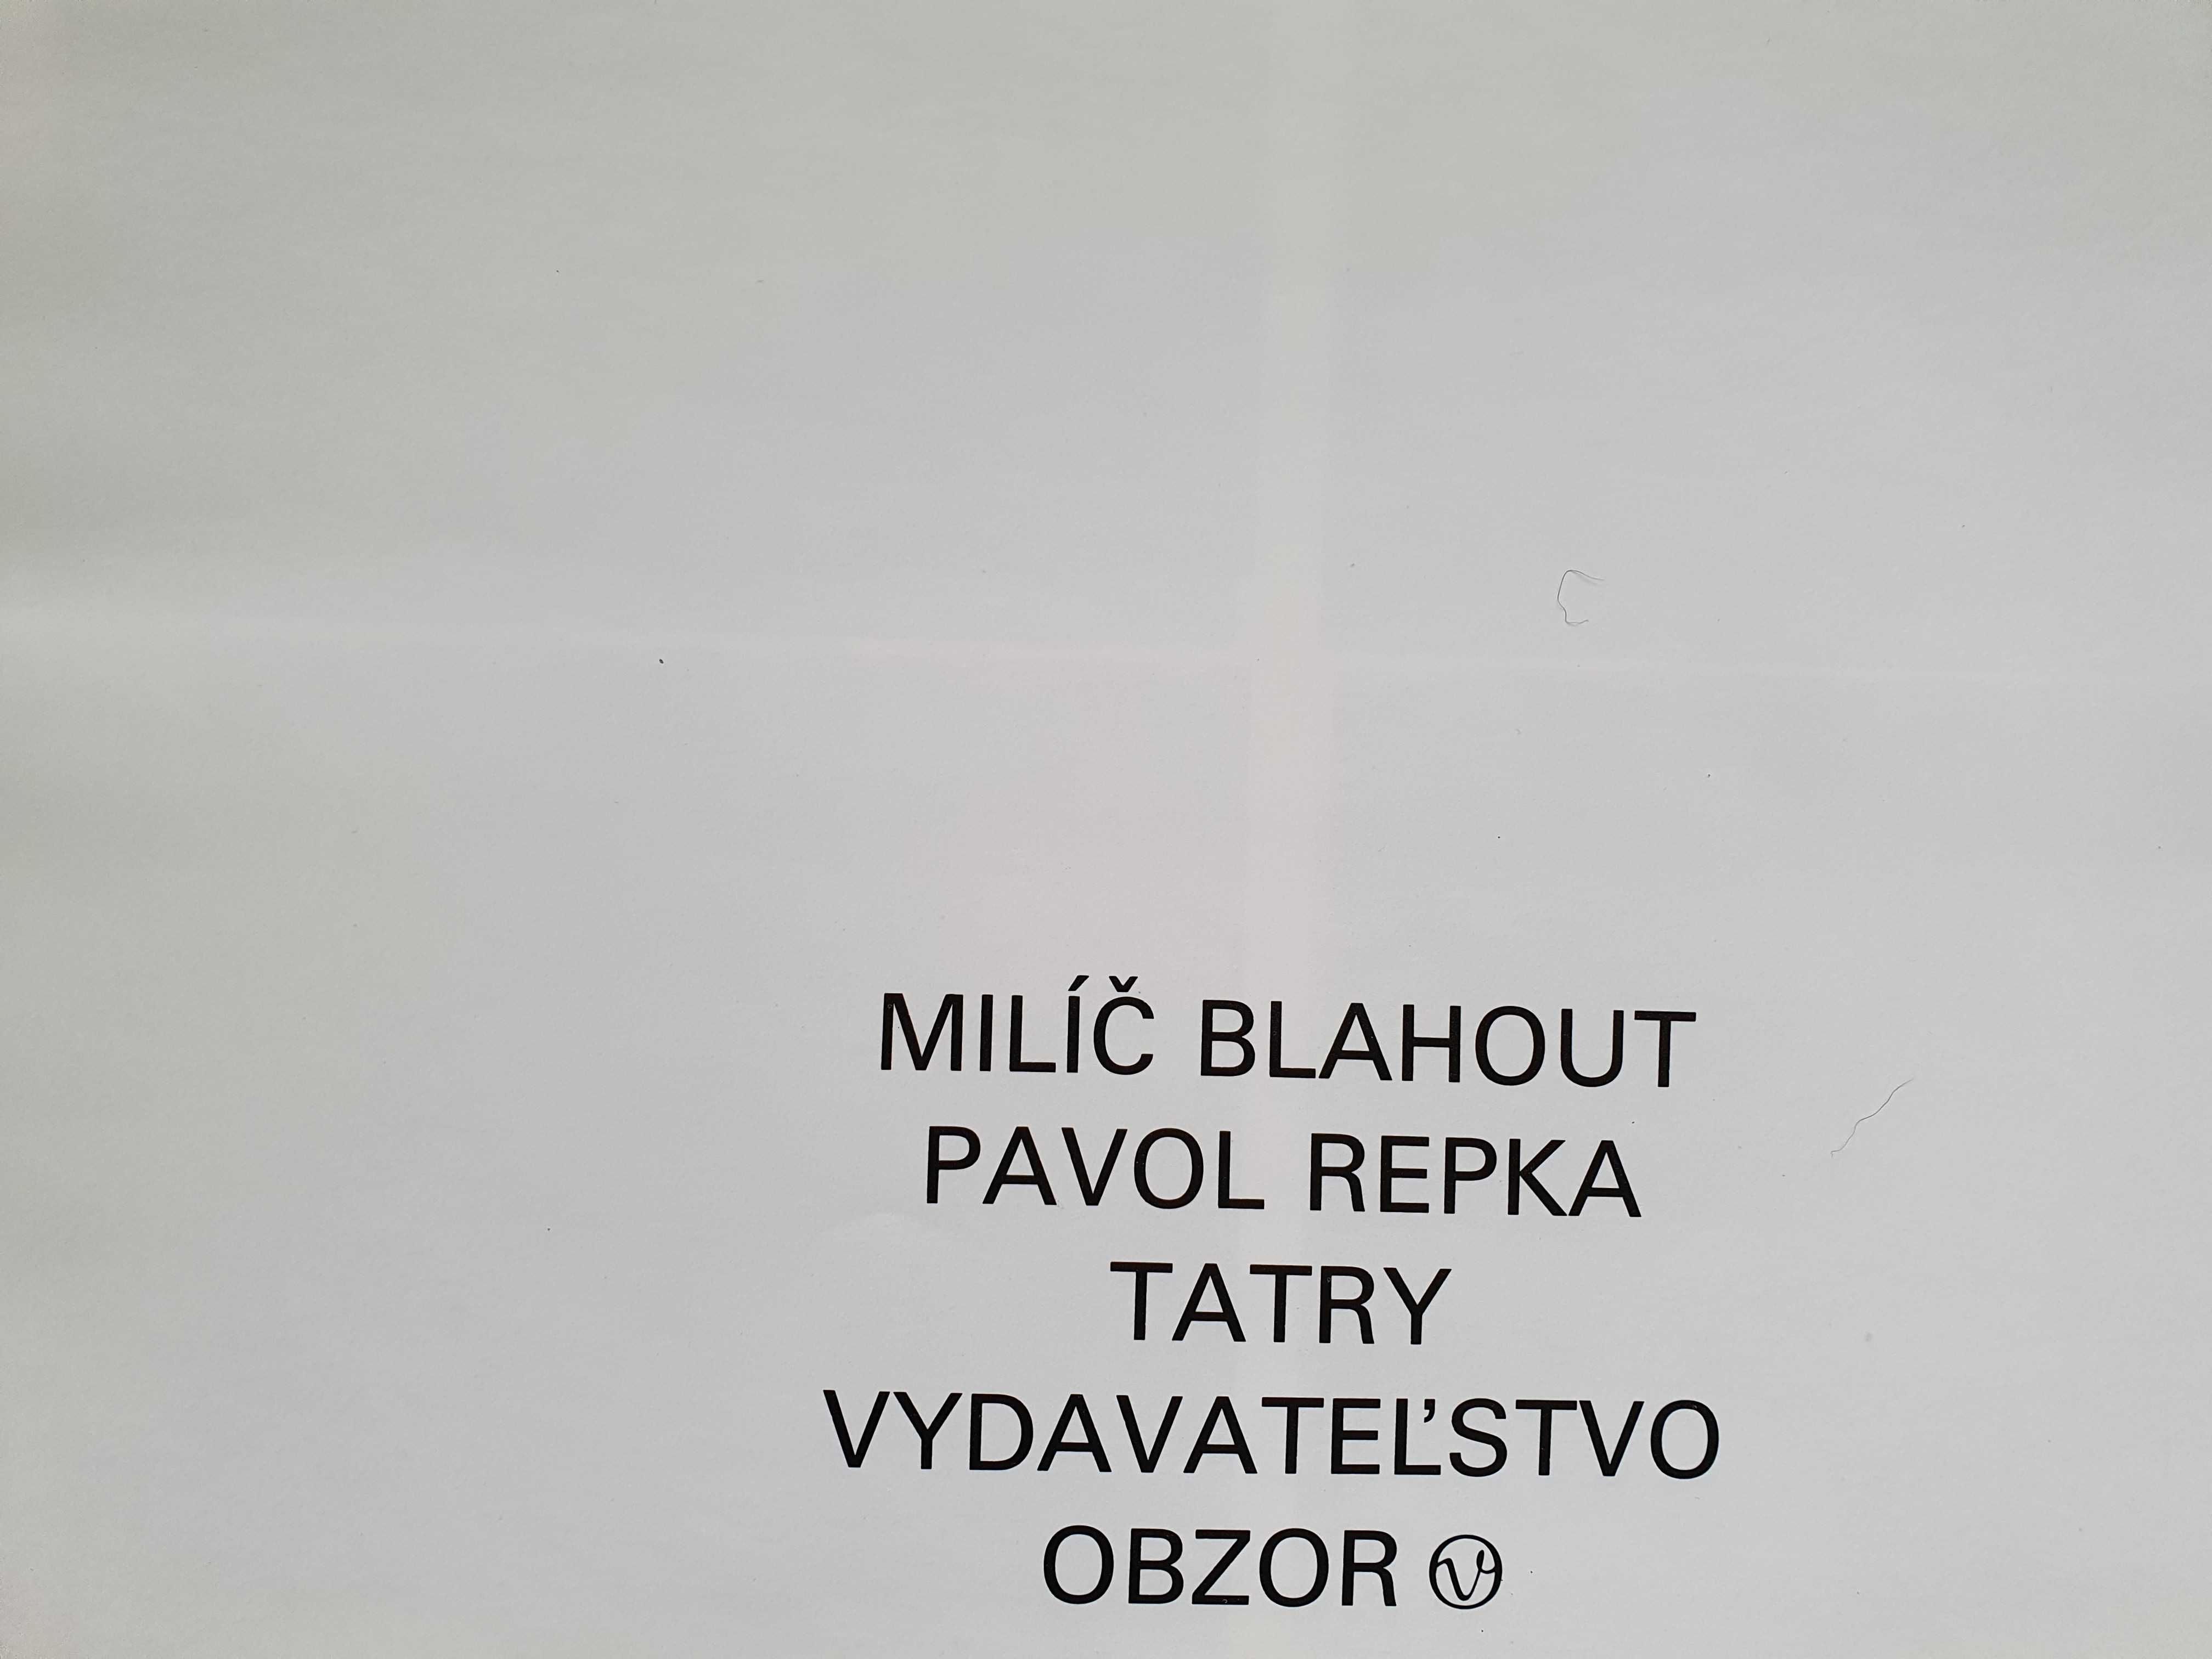 TATRY. Album. Wydanie czesko-słowackie. Milič Blahout, Pavol Repka